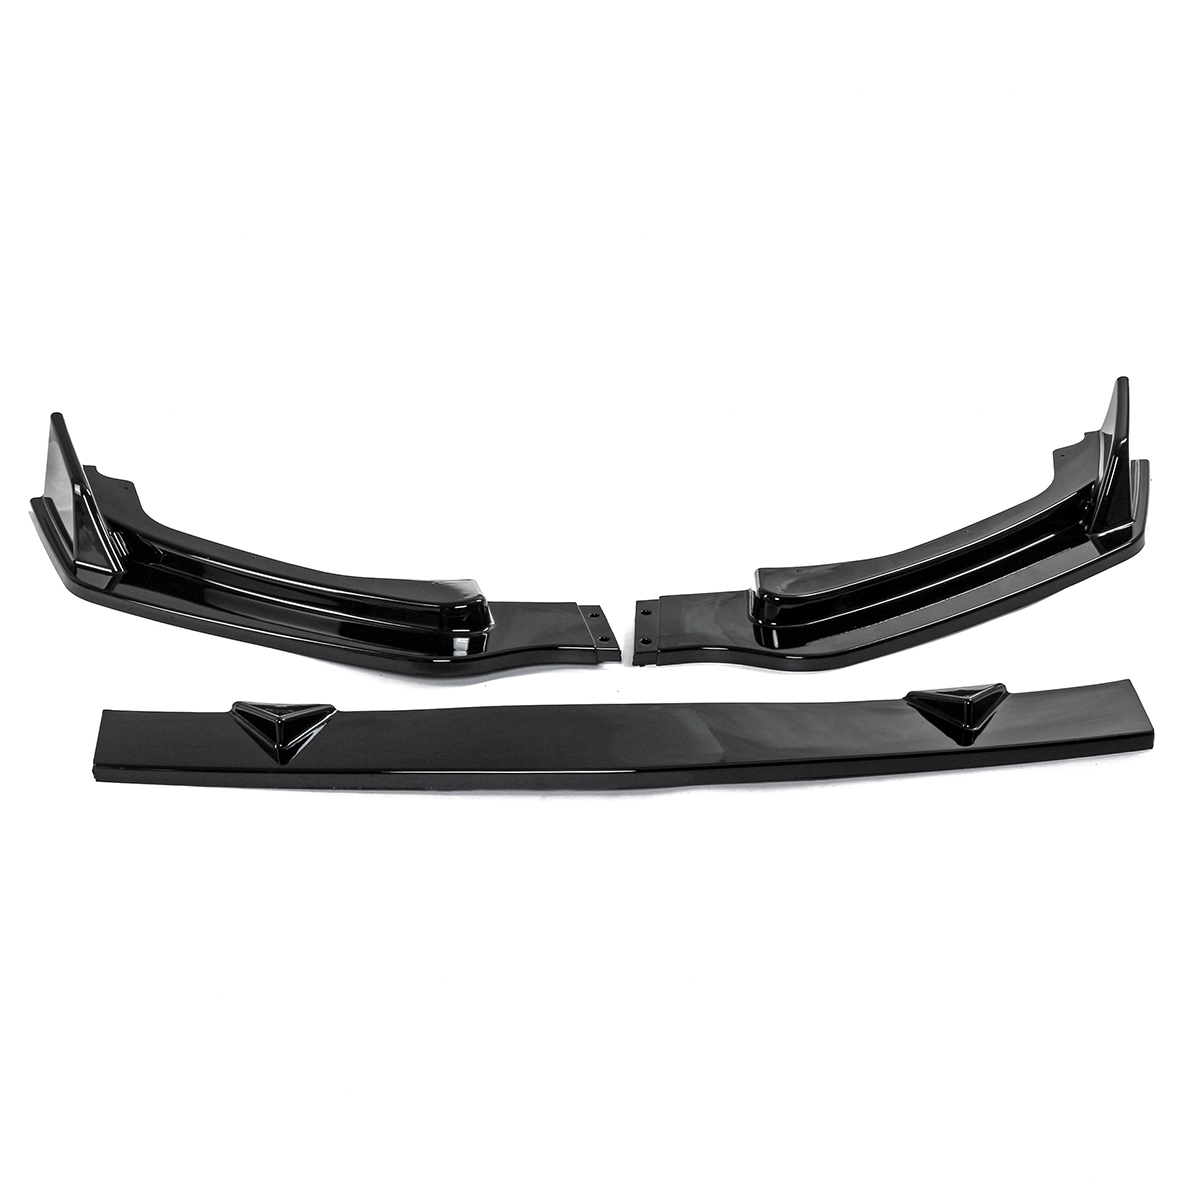 3 Pcs/Set Glossy Black Front Bumper Canard Chin Lip Spoiler Spliters for Infiniti Q50 Q50S Q50L 2014-2017